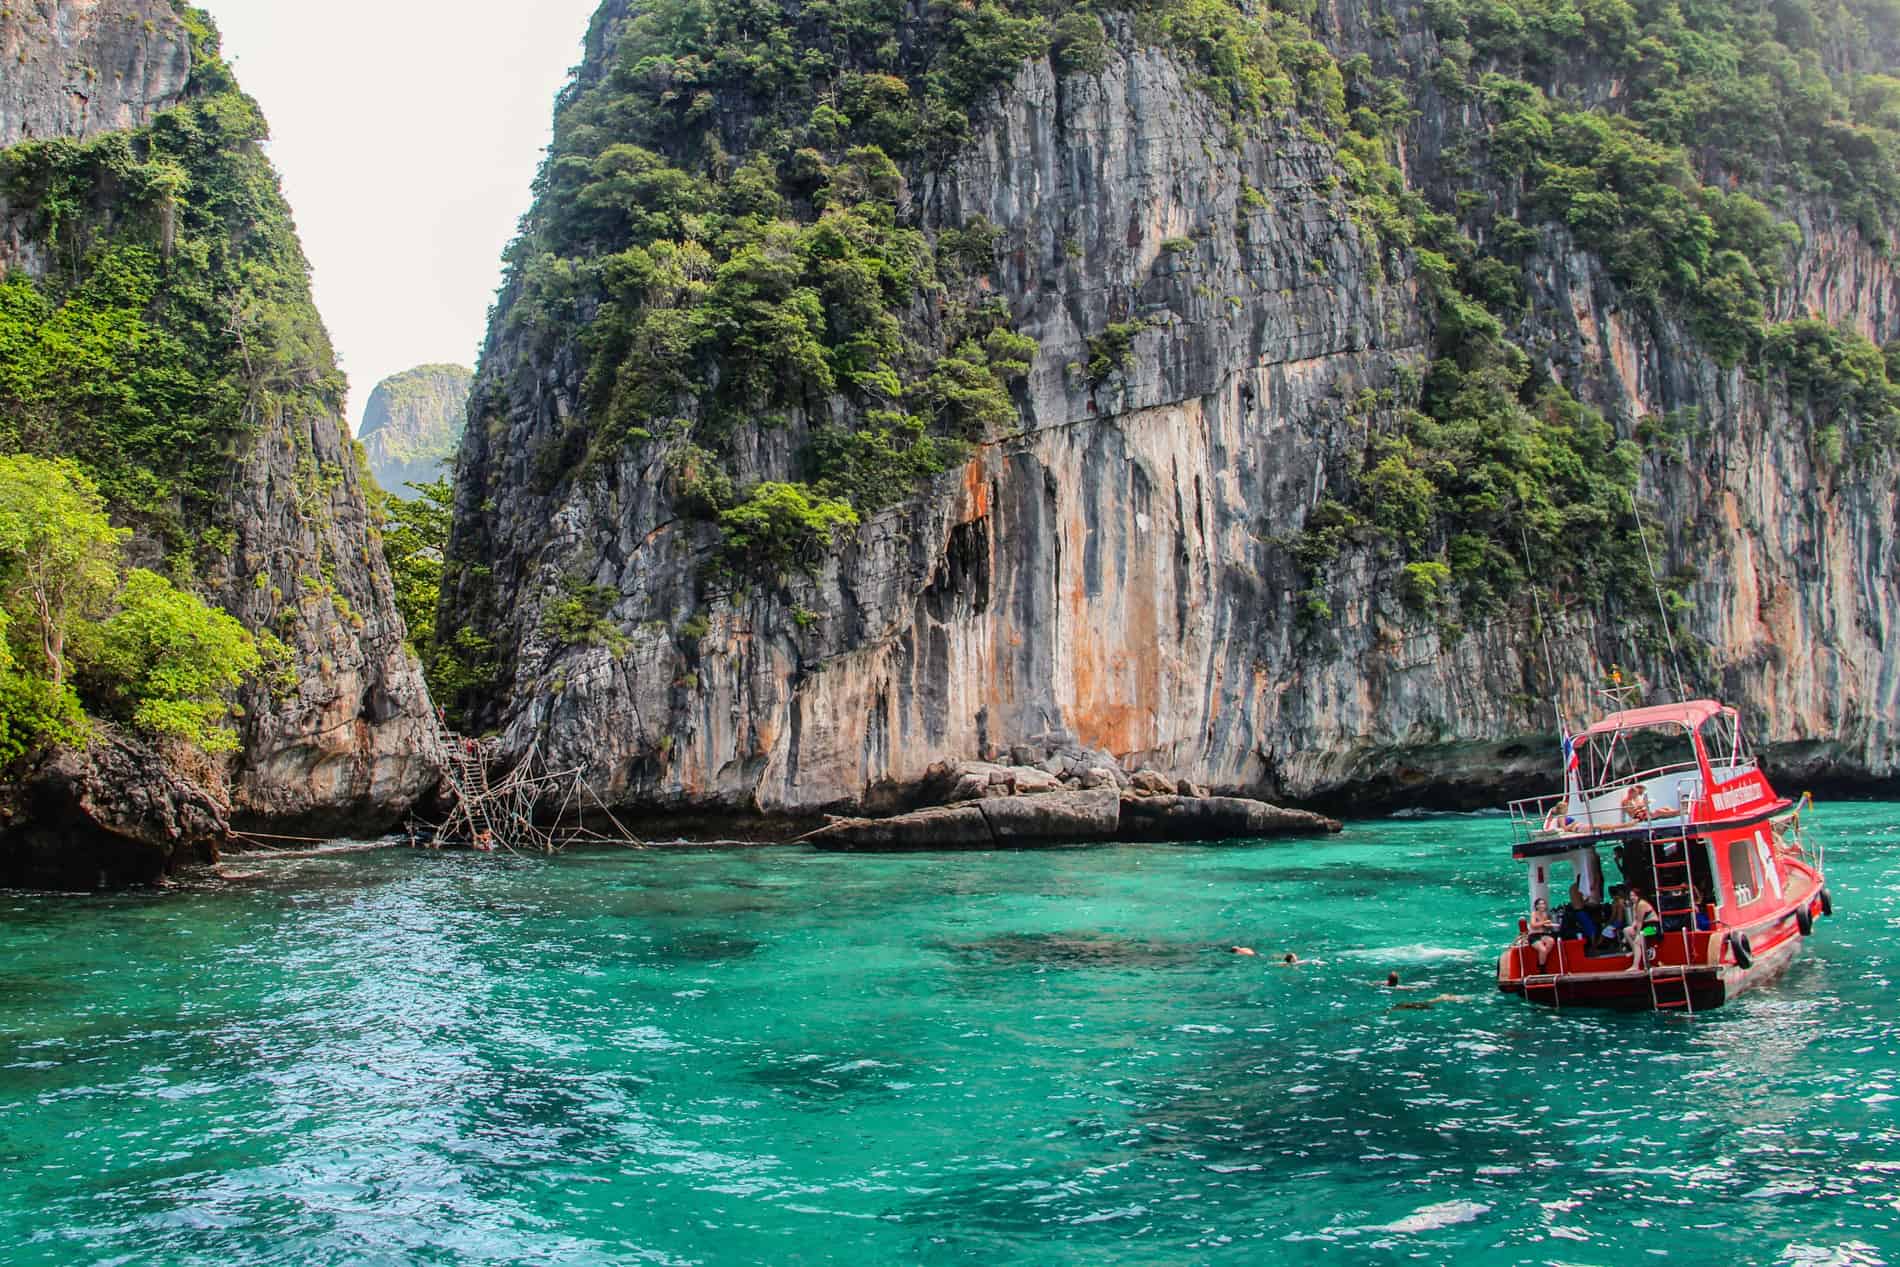 Visiting The Beach in Thailand – Maya Bay Reopens Responsibly